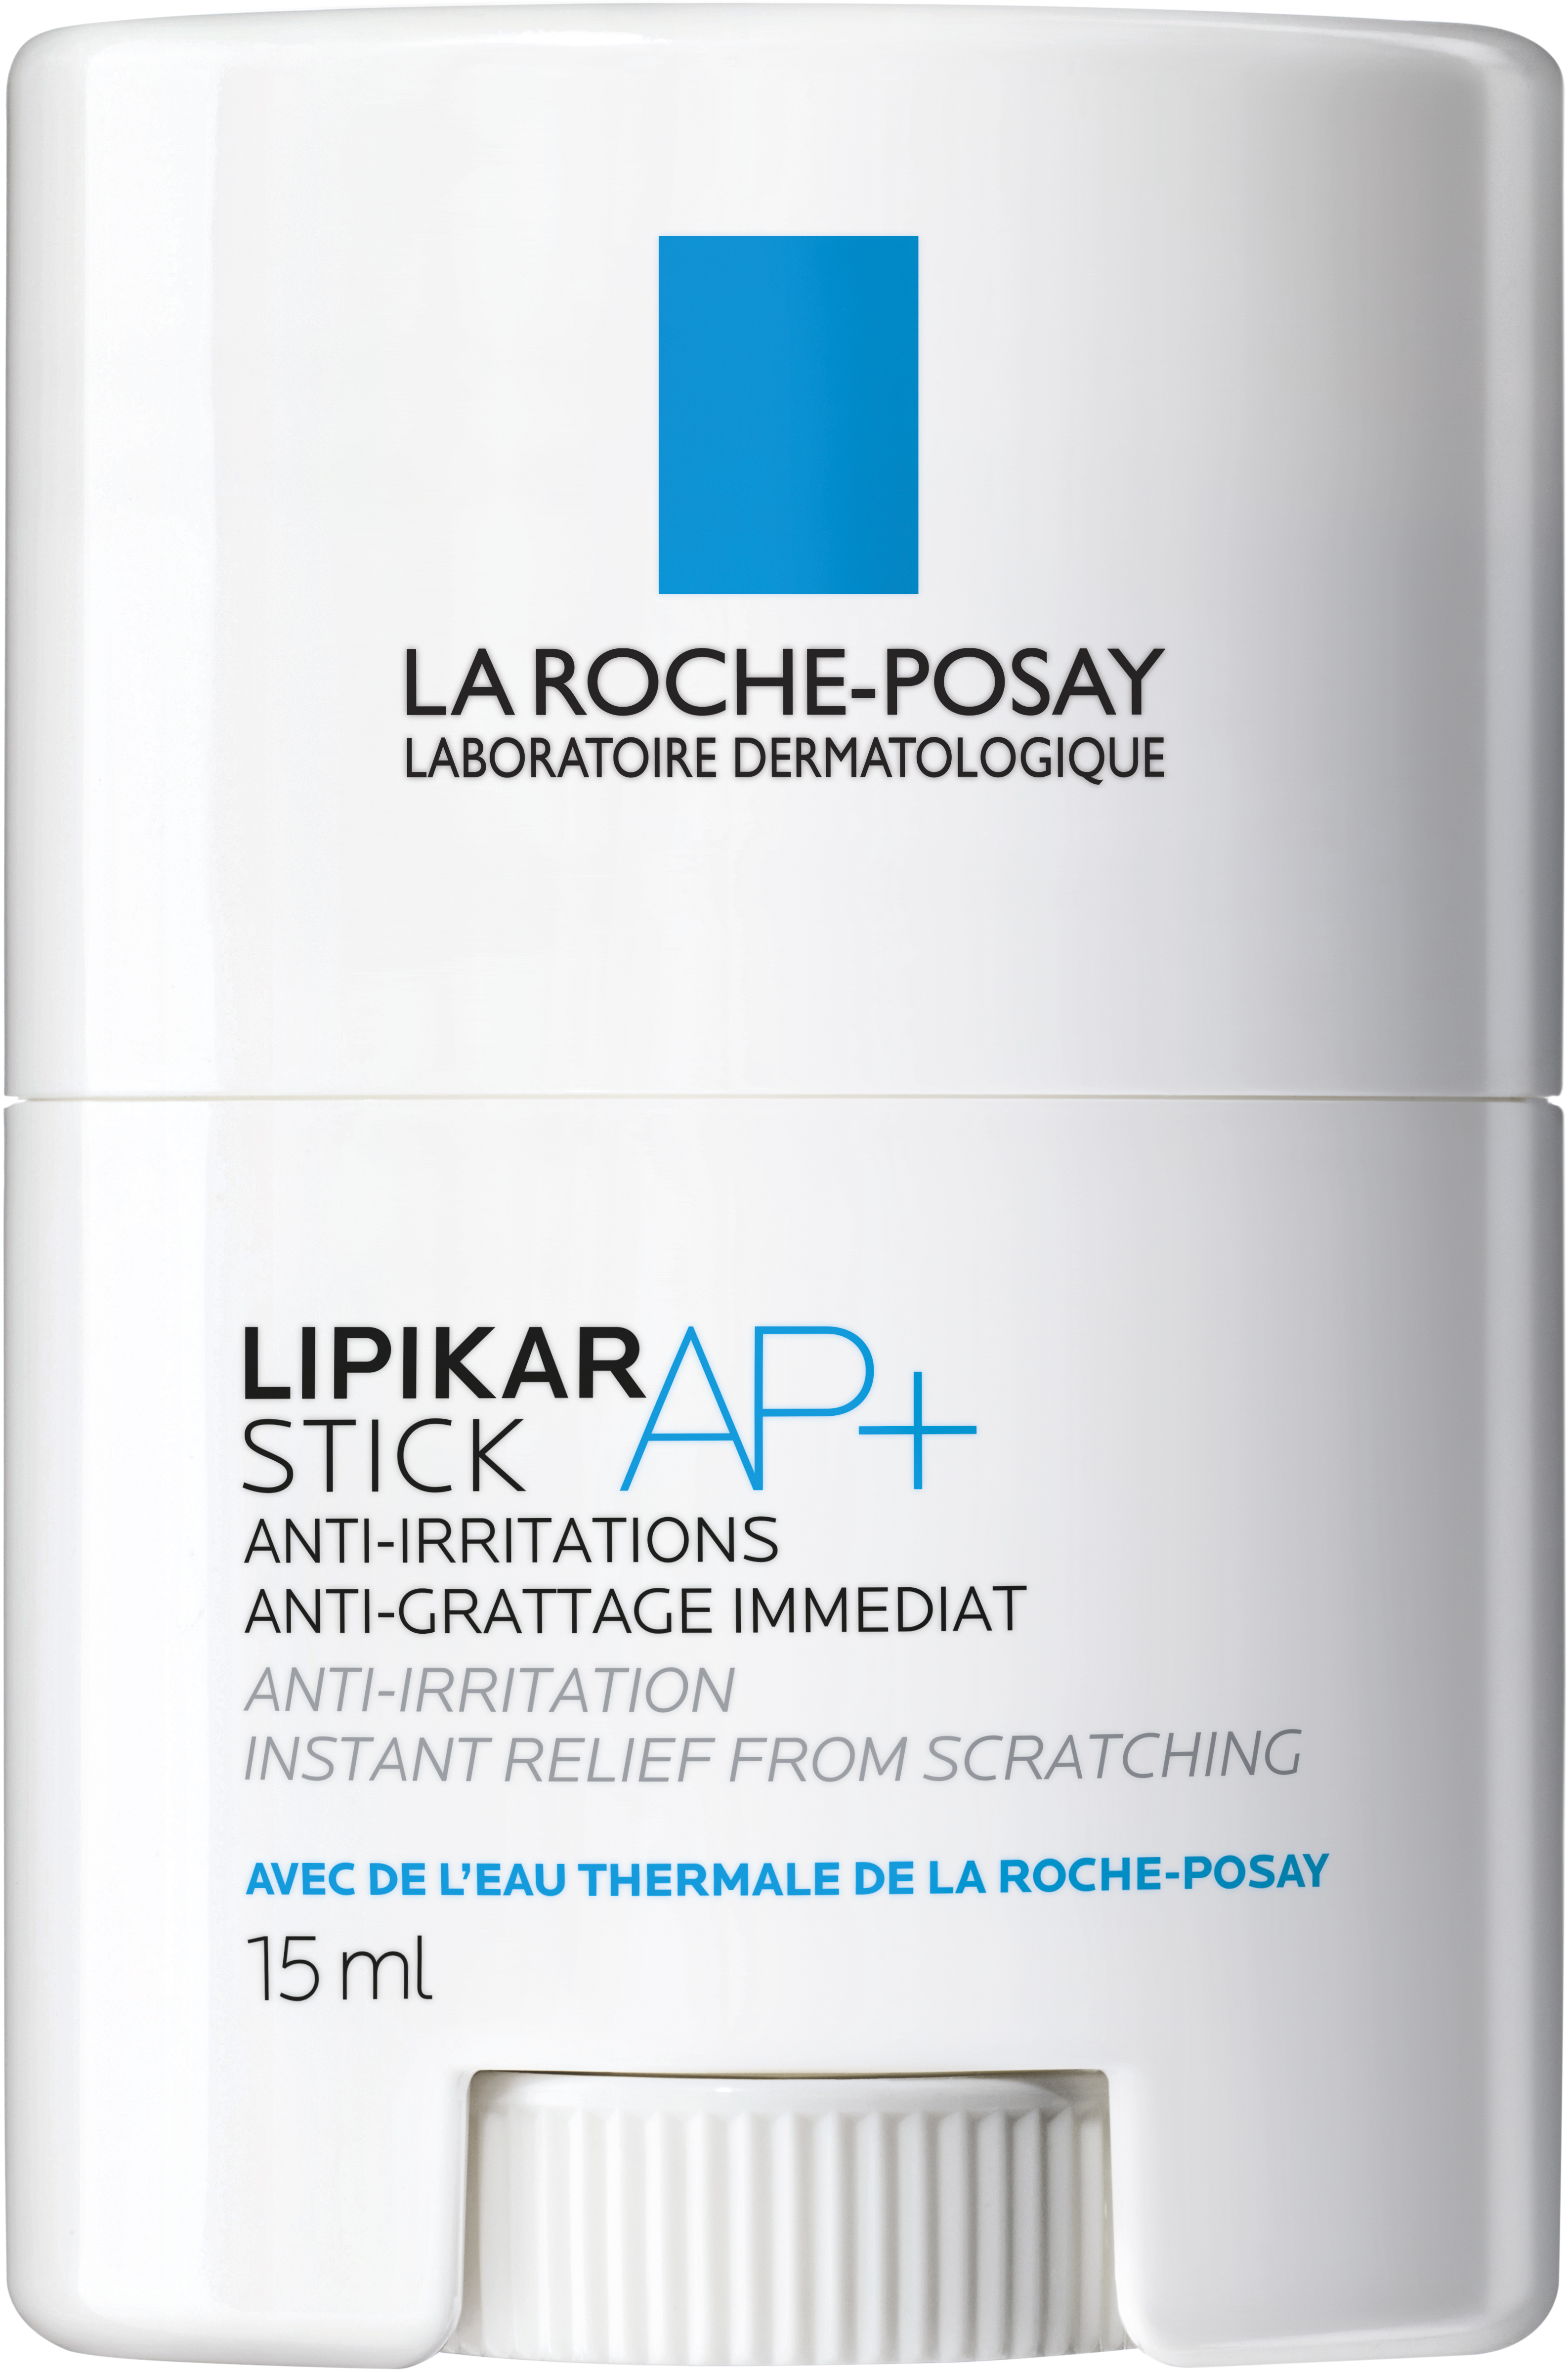 La Roche-Posay Lipikar stick AP+ 15 ml